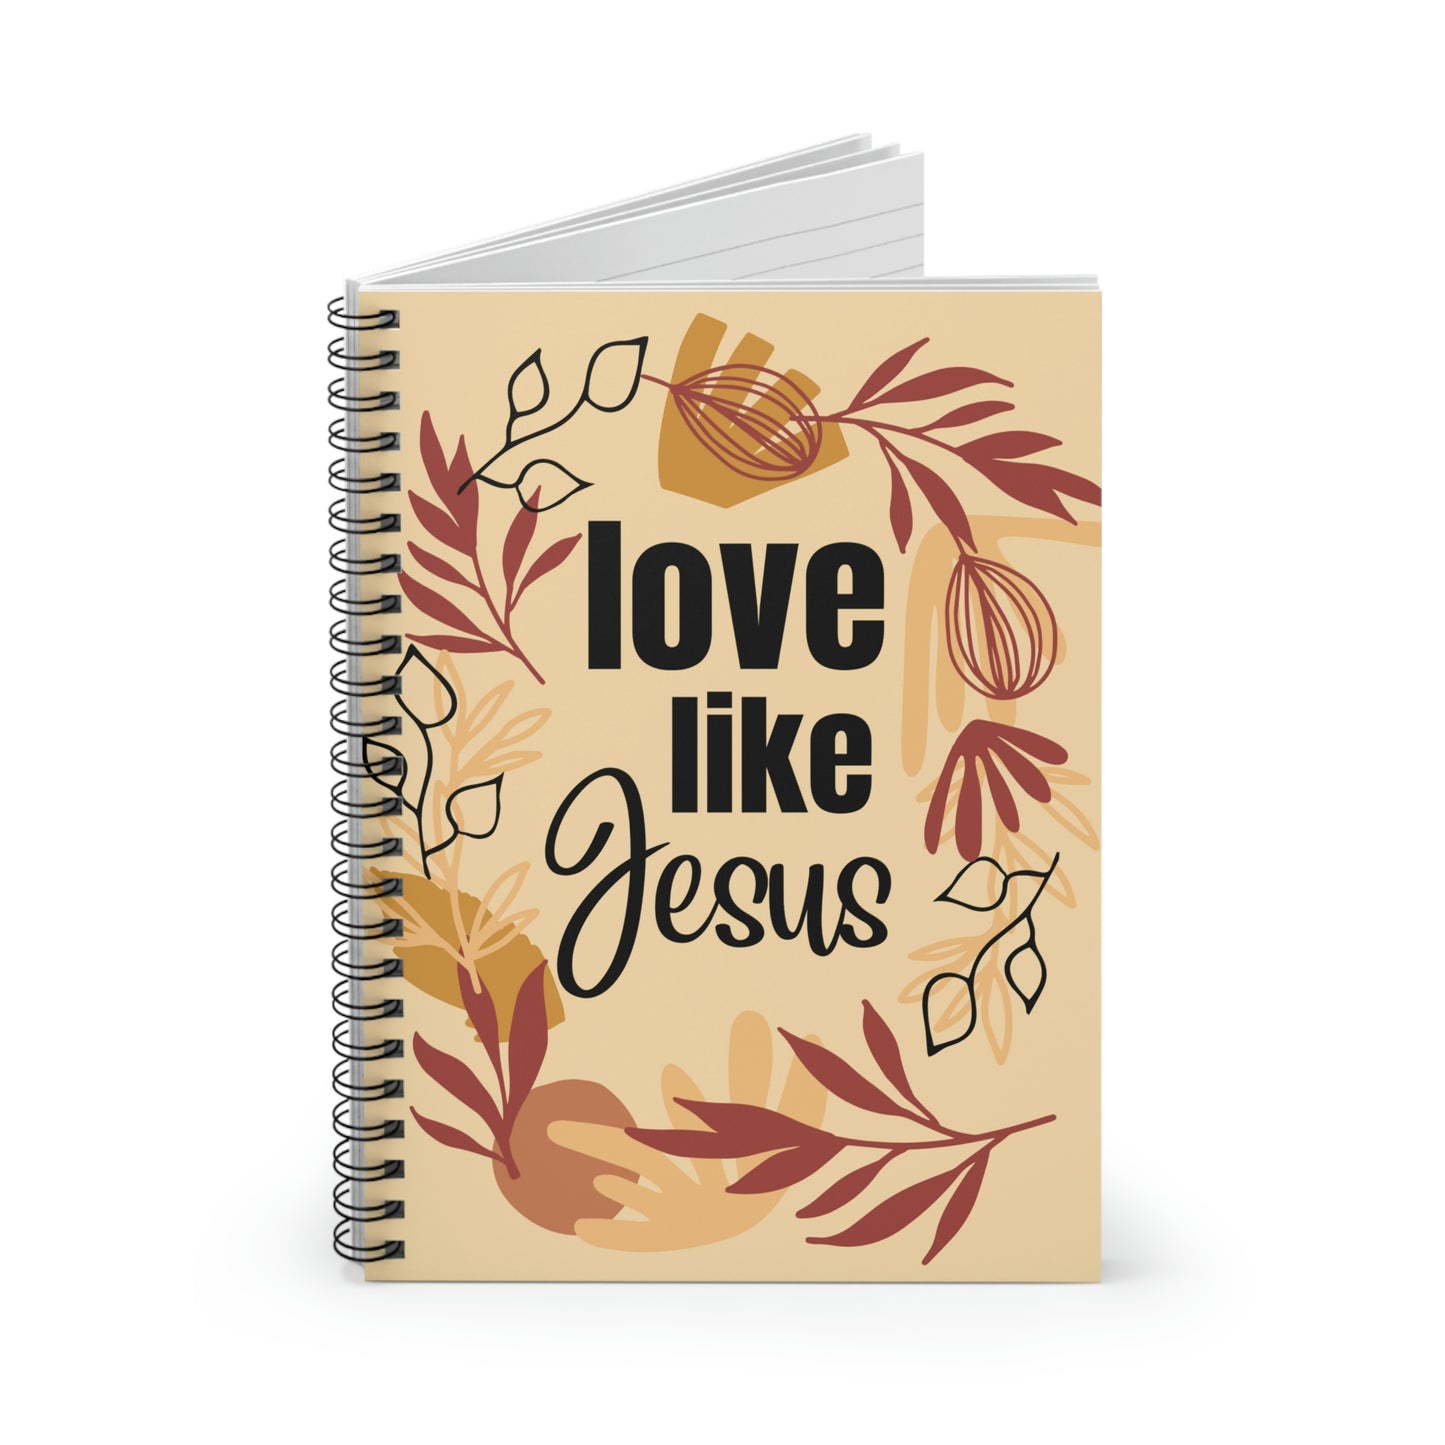 Christian Notebook, Bible Journal, Prayer Journal, Love Like Jesus, Christian Merch Blank Spiral Notebook - Ruled Line